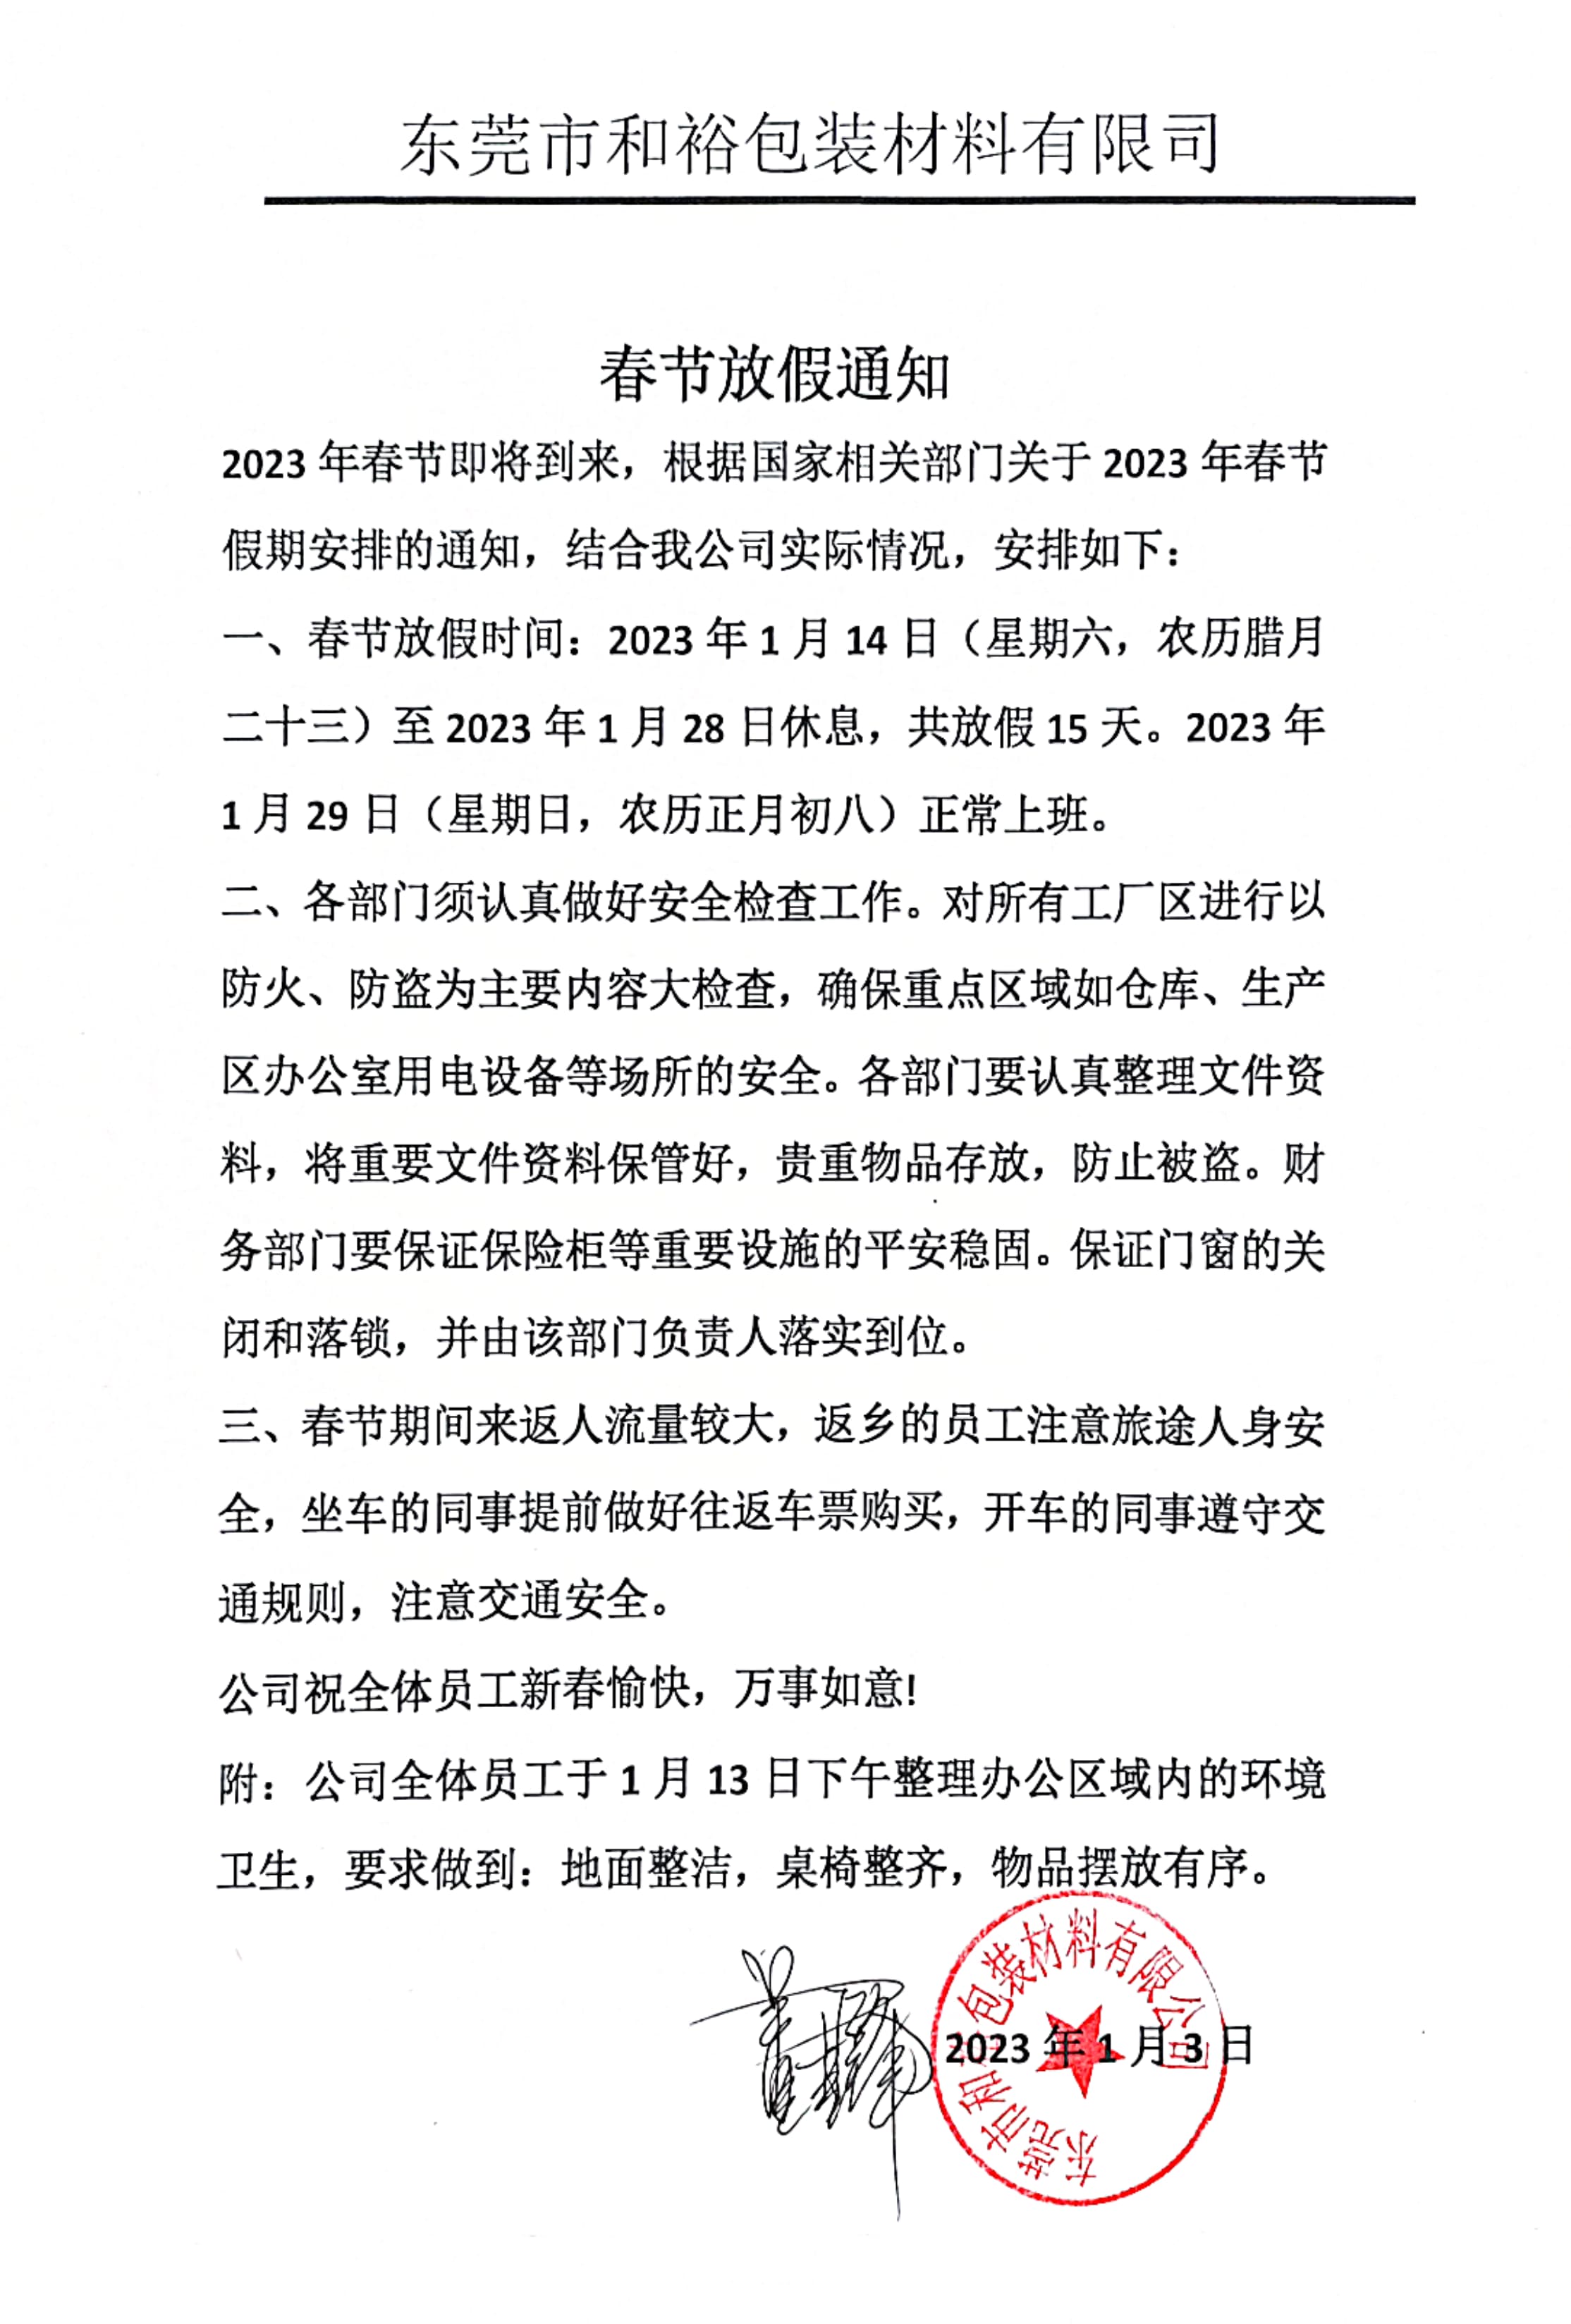 扬州市2023年和裕包装春节放假通知